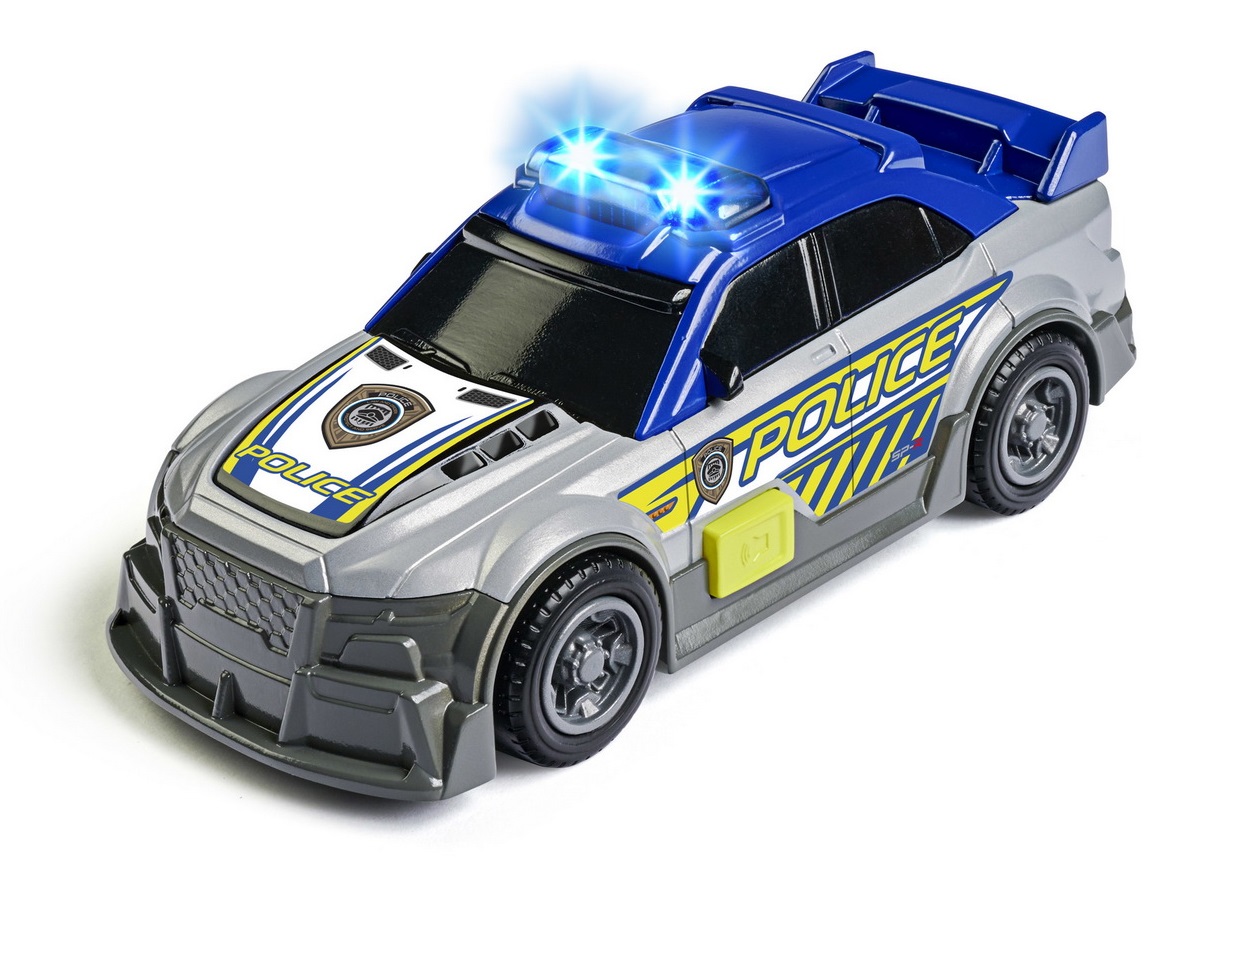 Masina de politie - Dickie | Dickie Toys